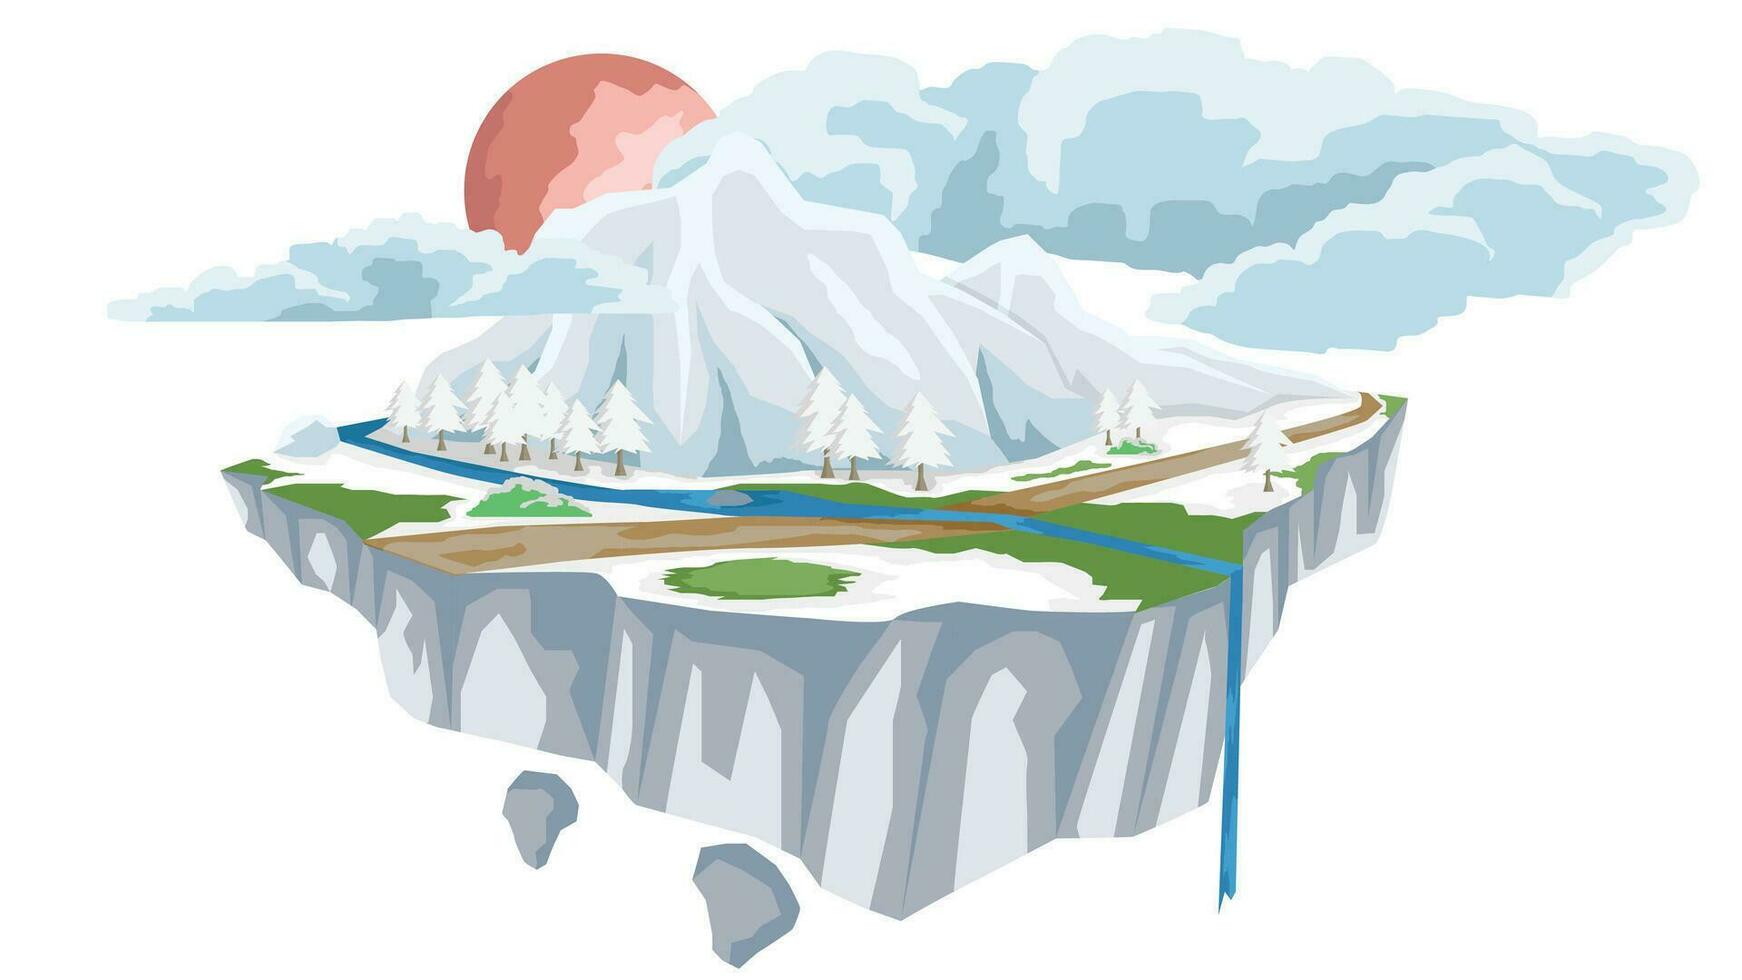 vektor eller illustration av is ö med transport av jord väg med rever blockera. massiv isig bergen omgiven förbi träd. jord är täckt med snö. bakgrund röd måne och vit moln.